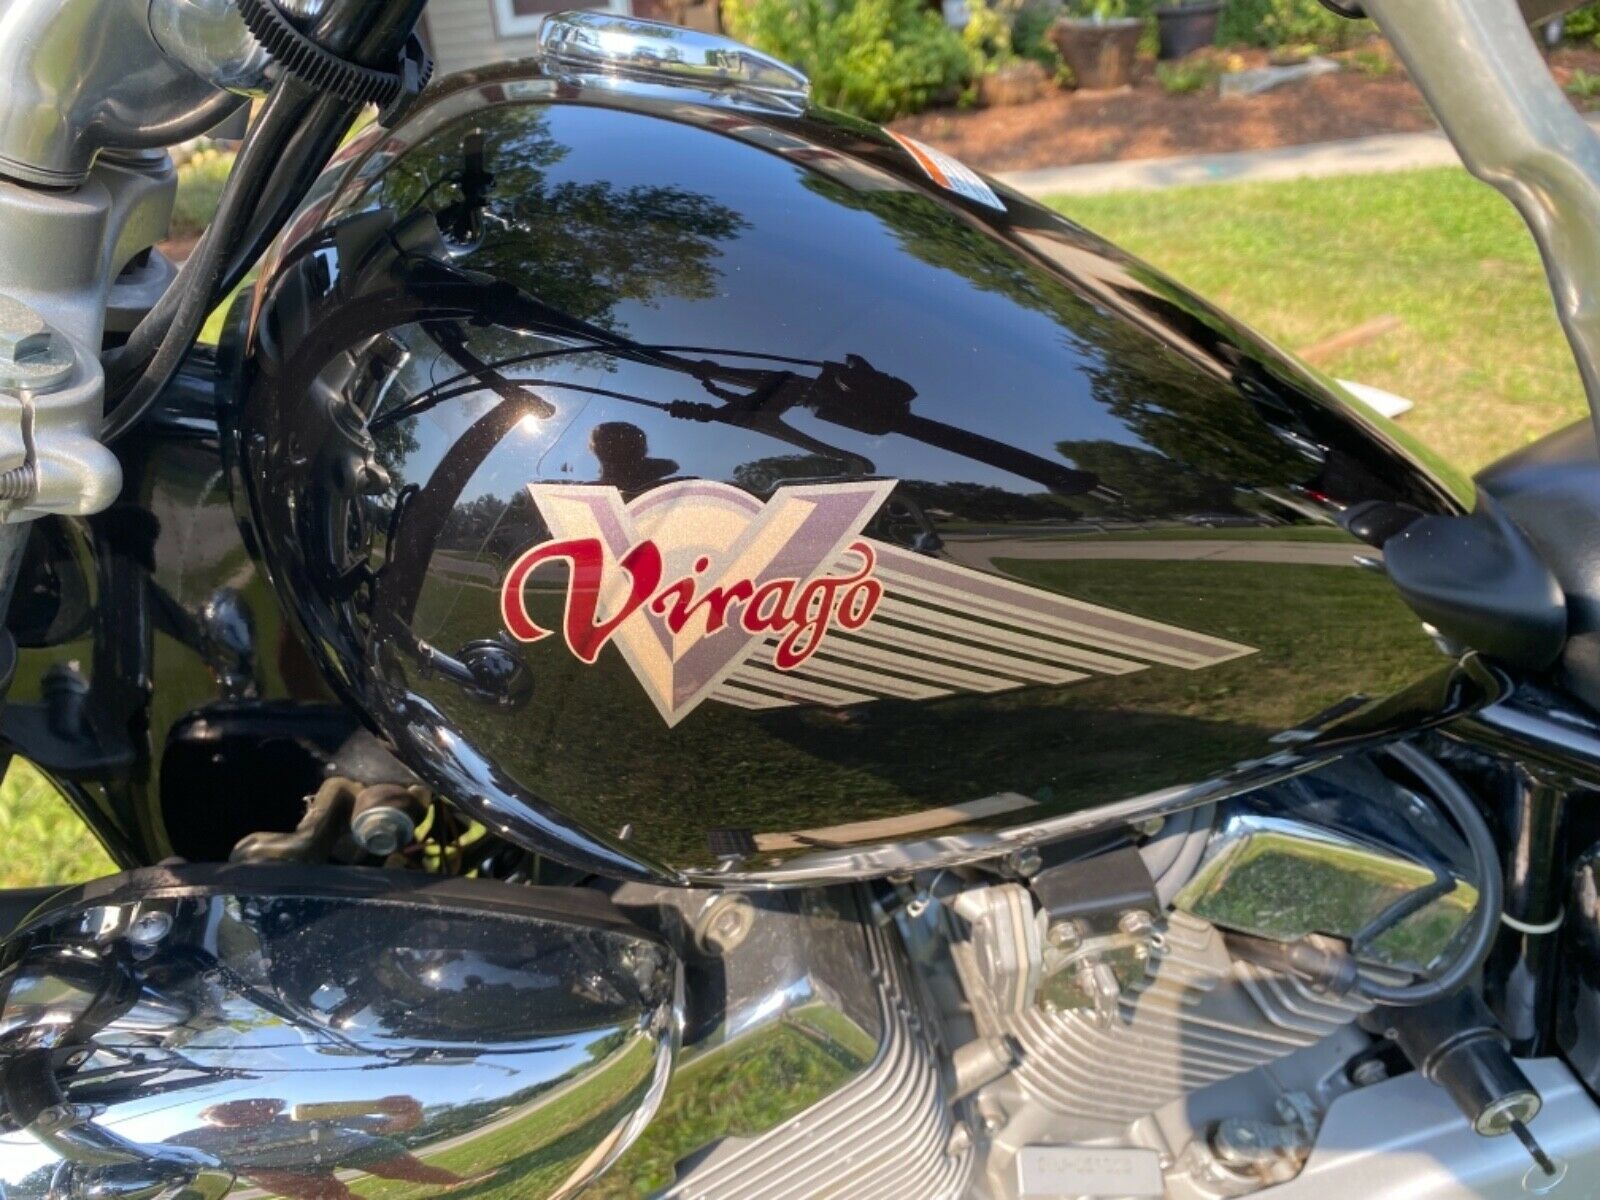 2004 Yamaha Virago